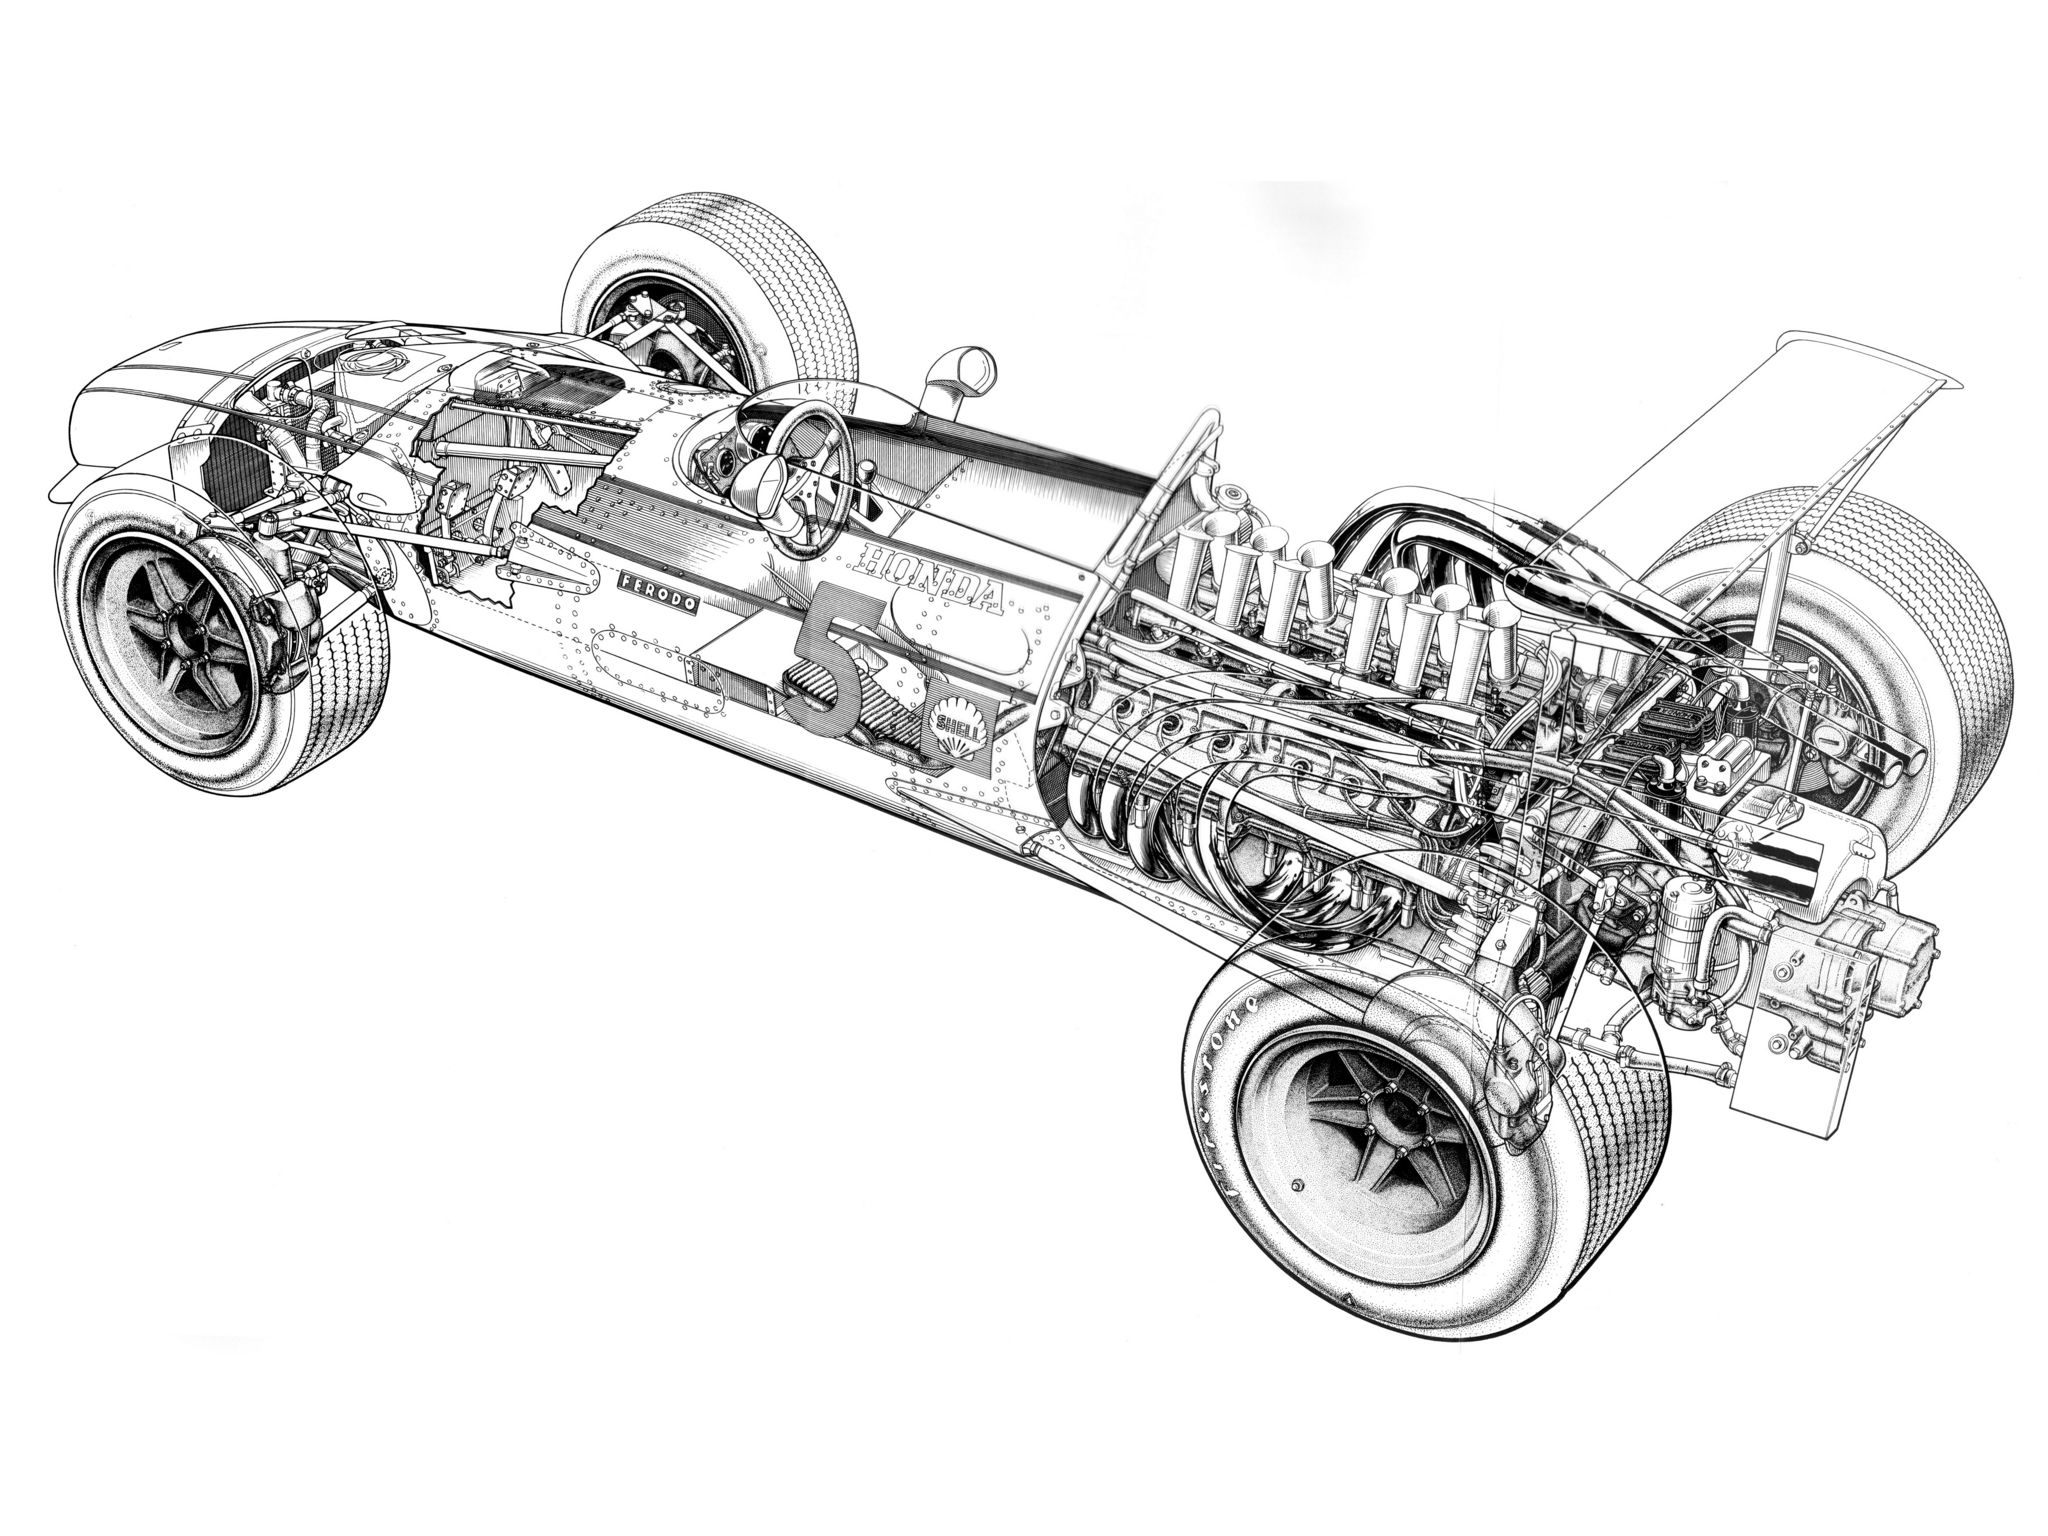 Honda Ra301 Illustrator Uncredited Cutaway Line Art